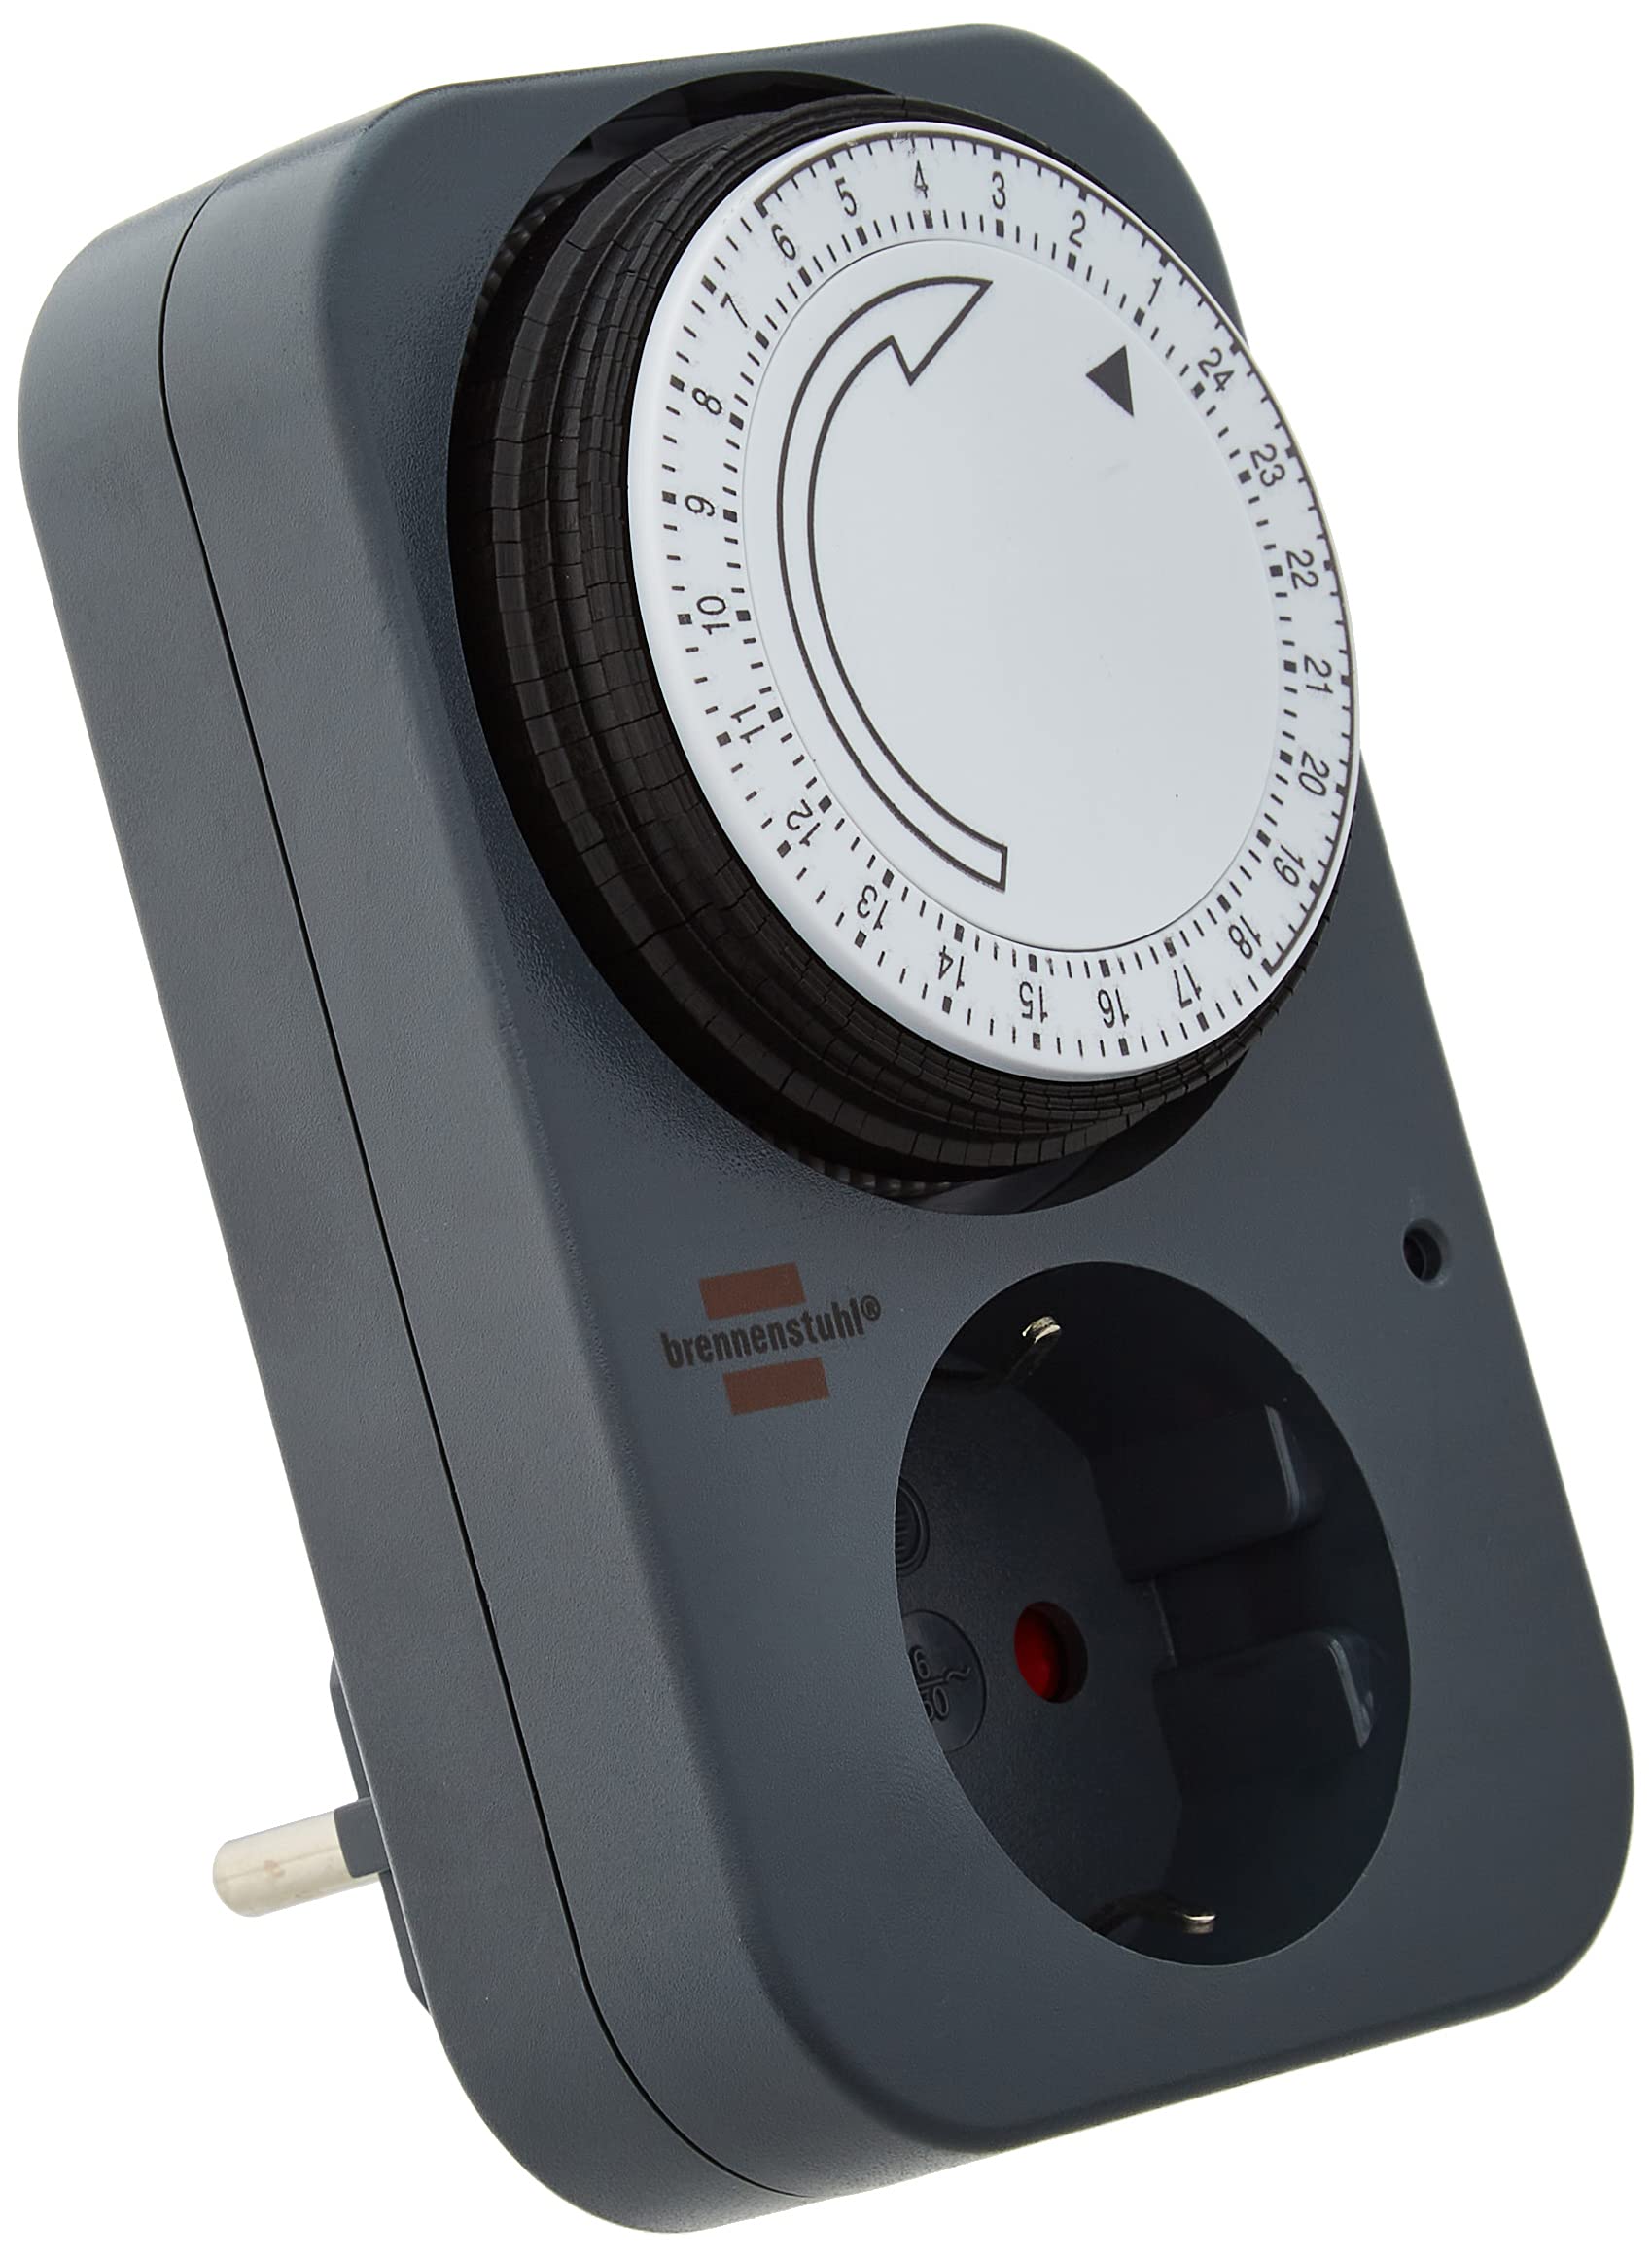 Mechanical timer MZ 20-1